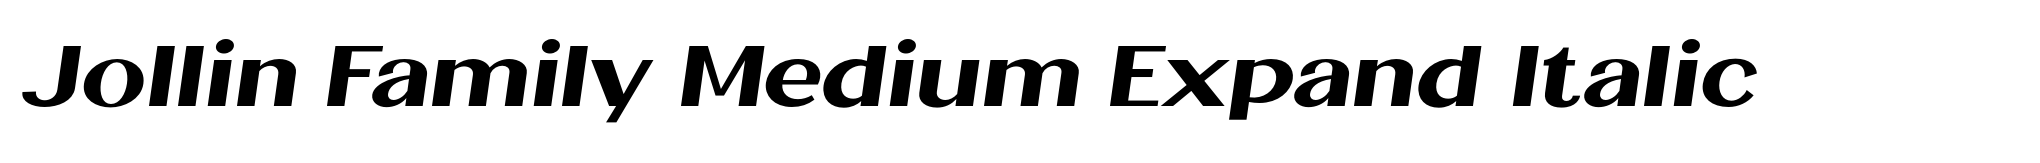 Jollin Family Medium Expand Italic image